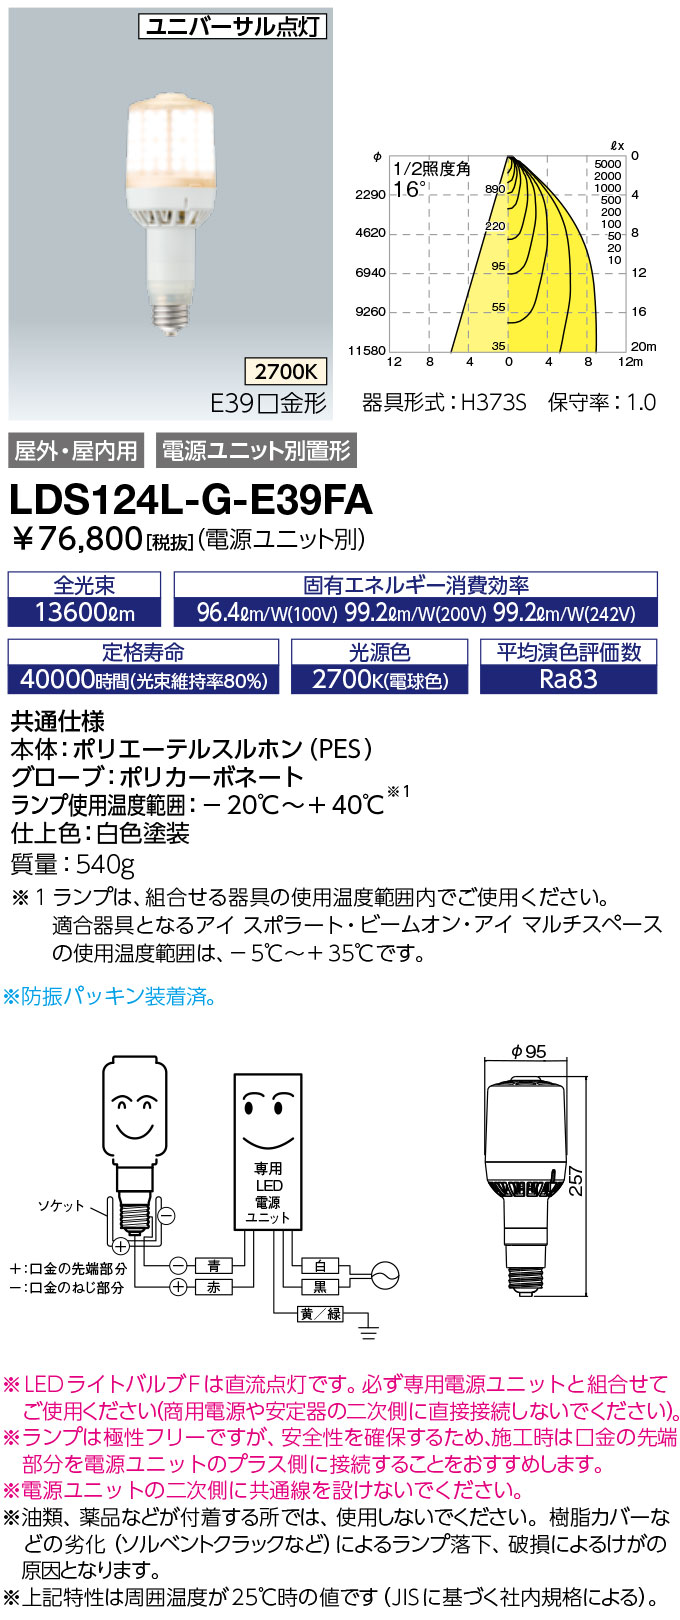 LDS124L-G-E39FA ランプ レディオック LEDライトバルブF水銀ランプ400W相当 極性フリー E39口金 124W  電球色岩崎電気 ランプ タカラショップ